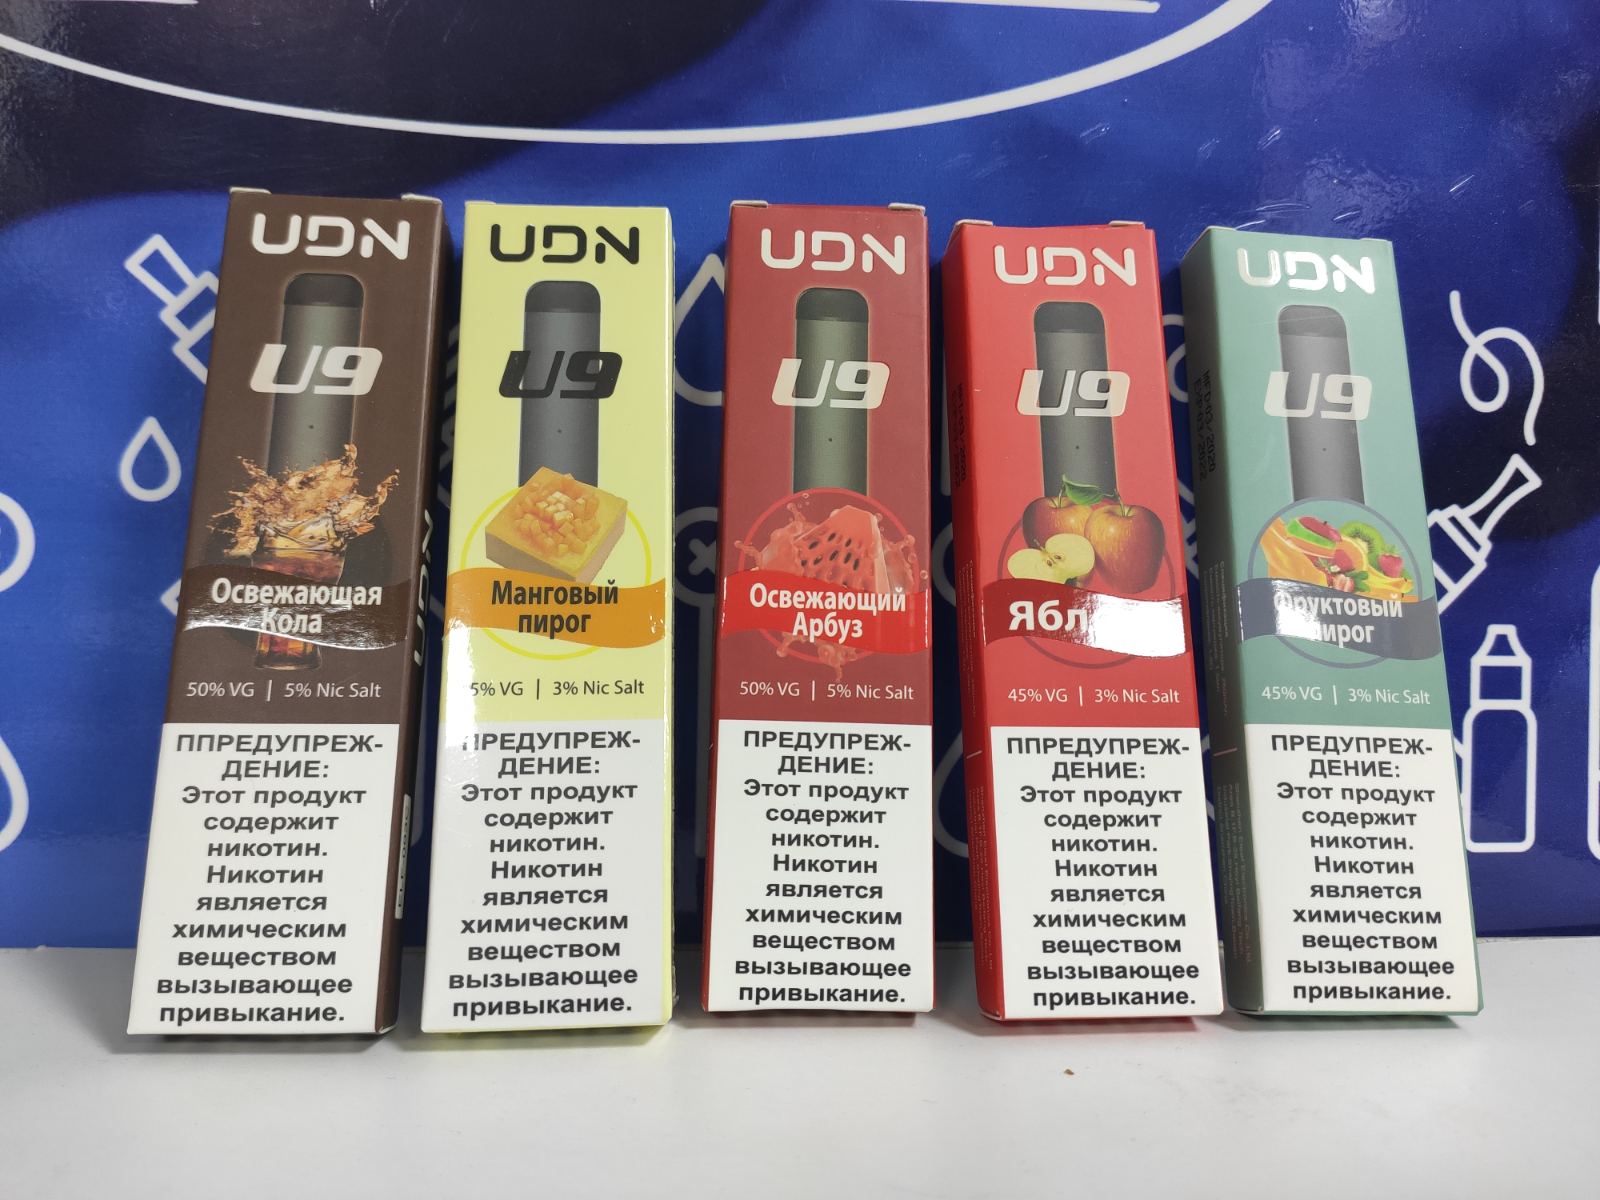 Купить Одноразовая электронная сигарета UDN U9